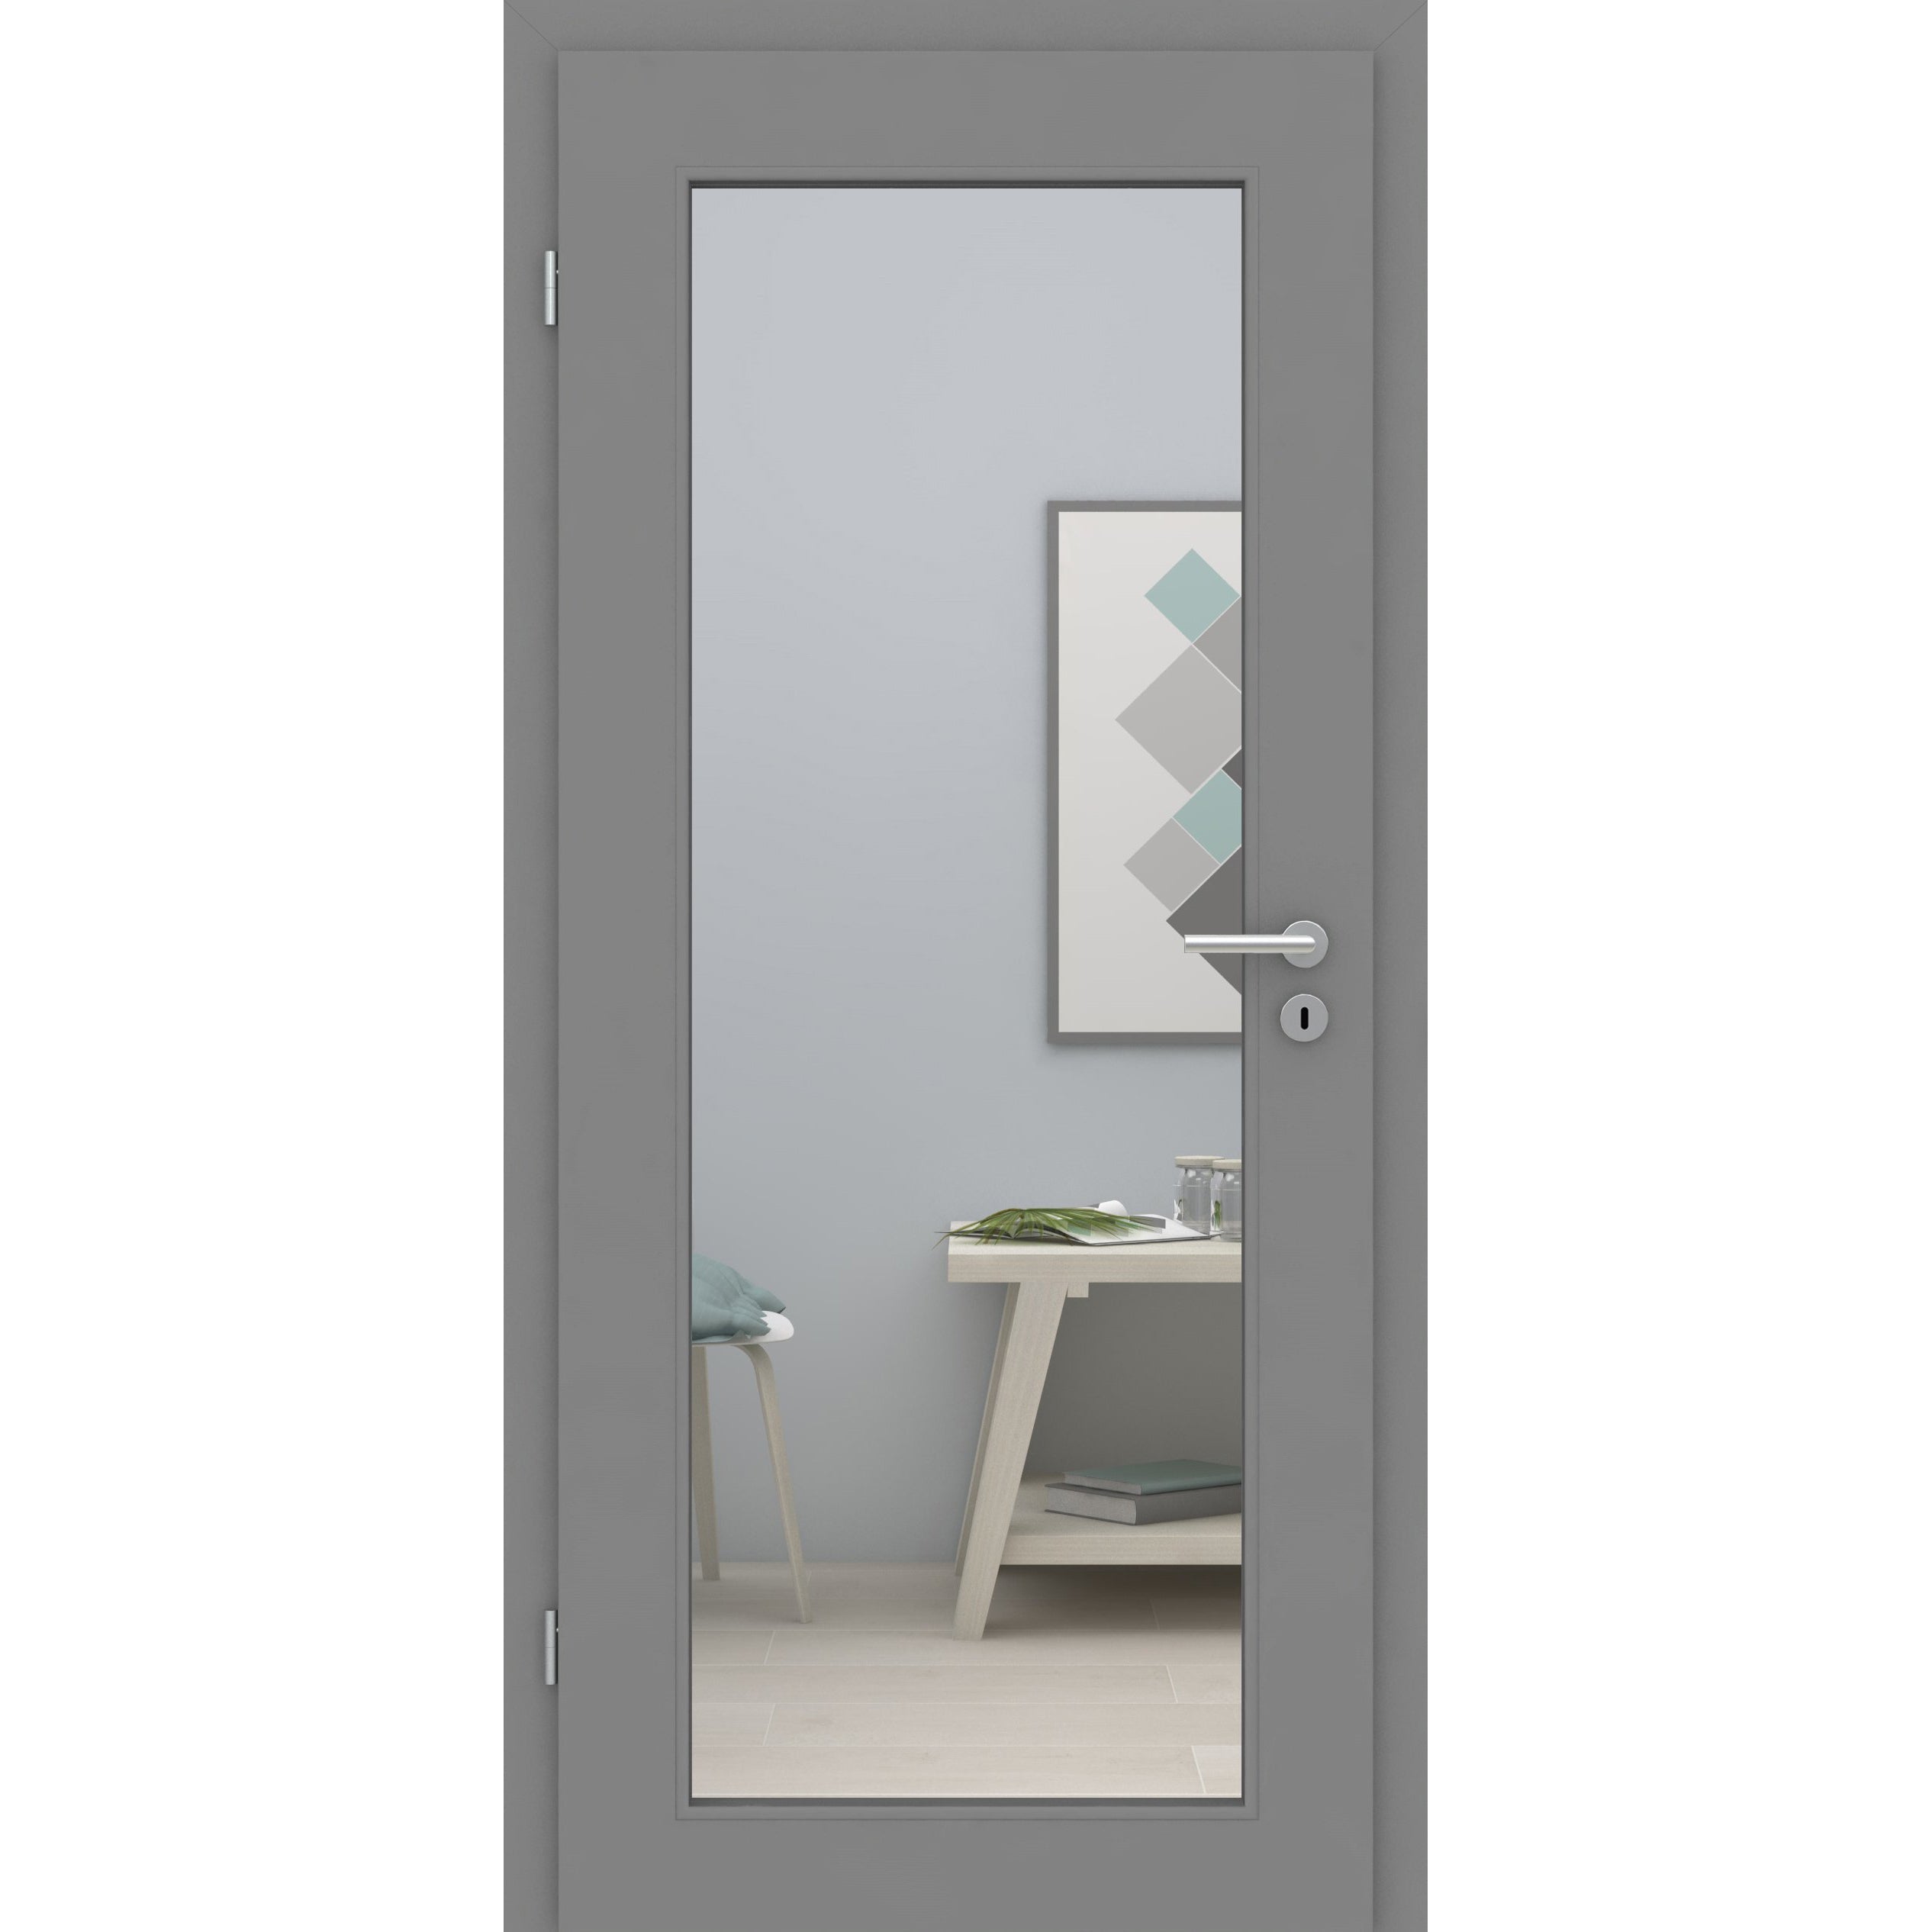 Zimmertür mit Zarge und Lichtausschnitt XL grau glatt Designkante - Modell LAXL